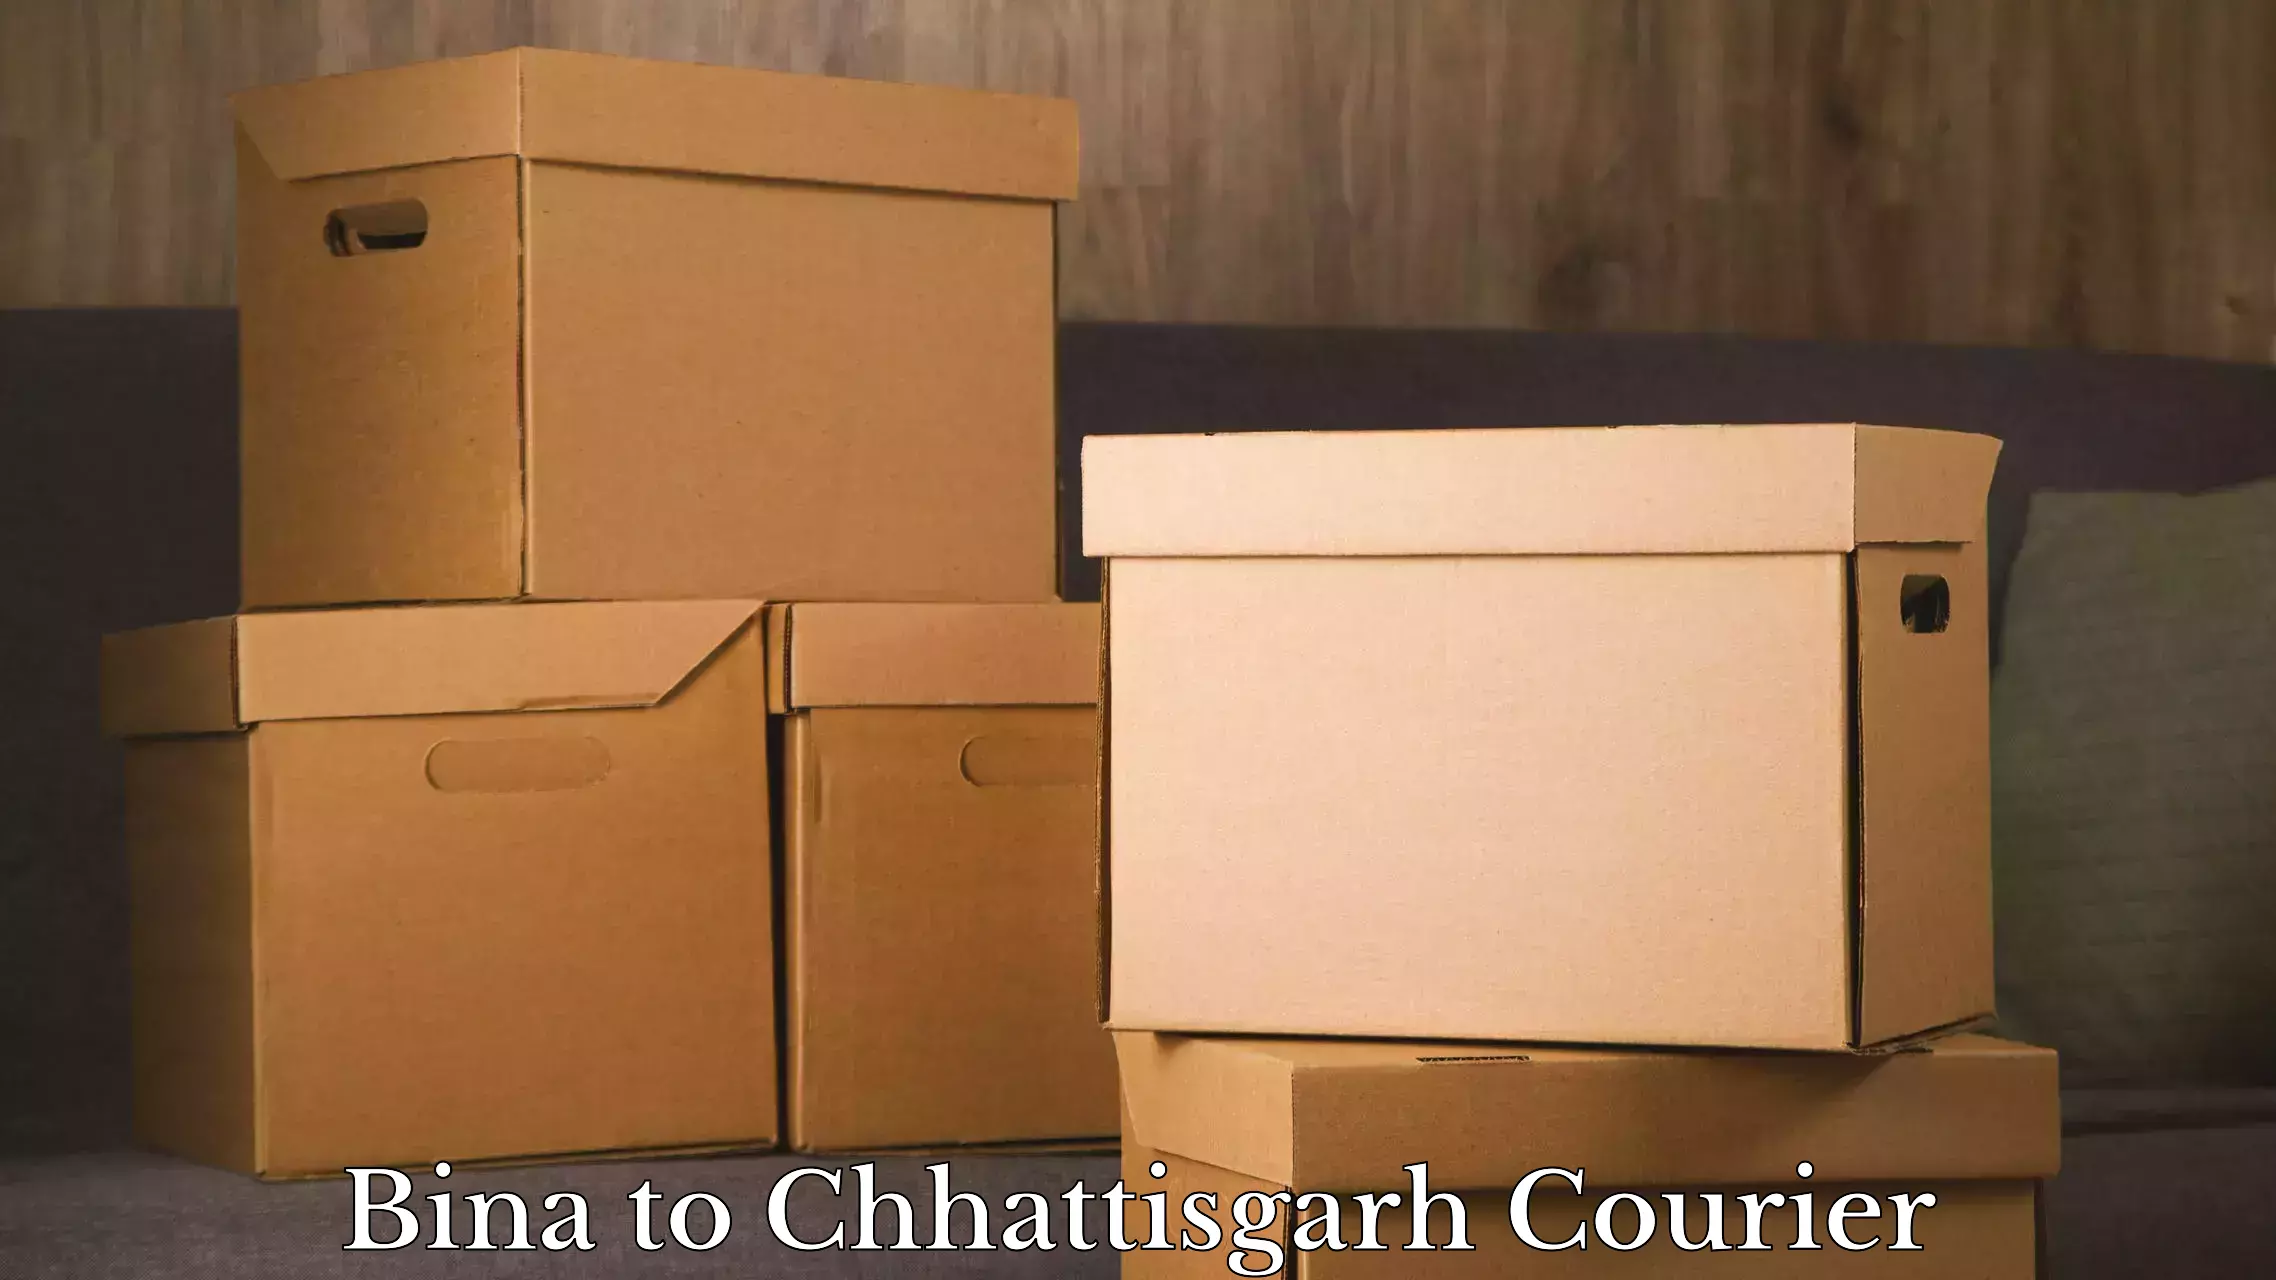 Luggage delivery network Bina to Korea Chhattisgarh